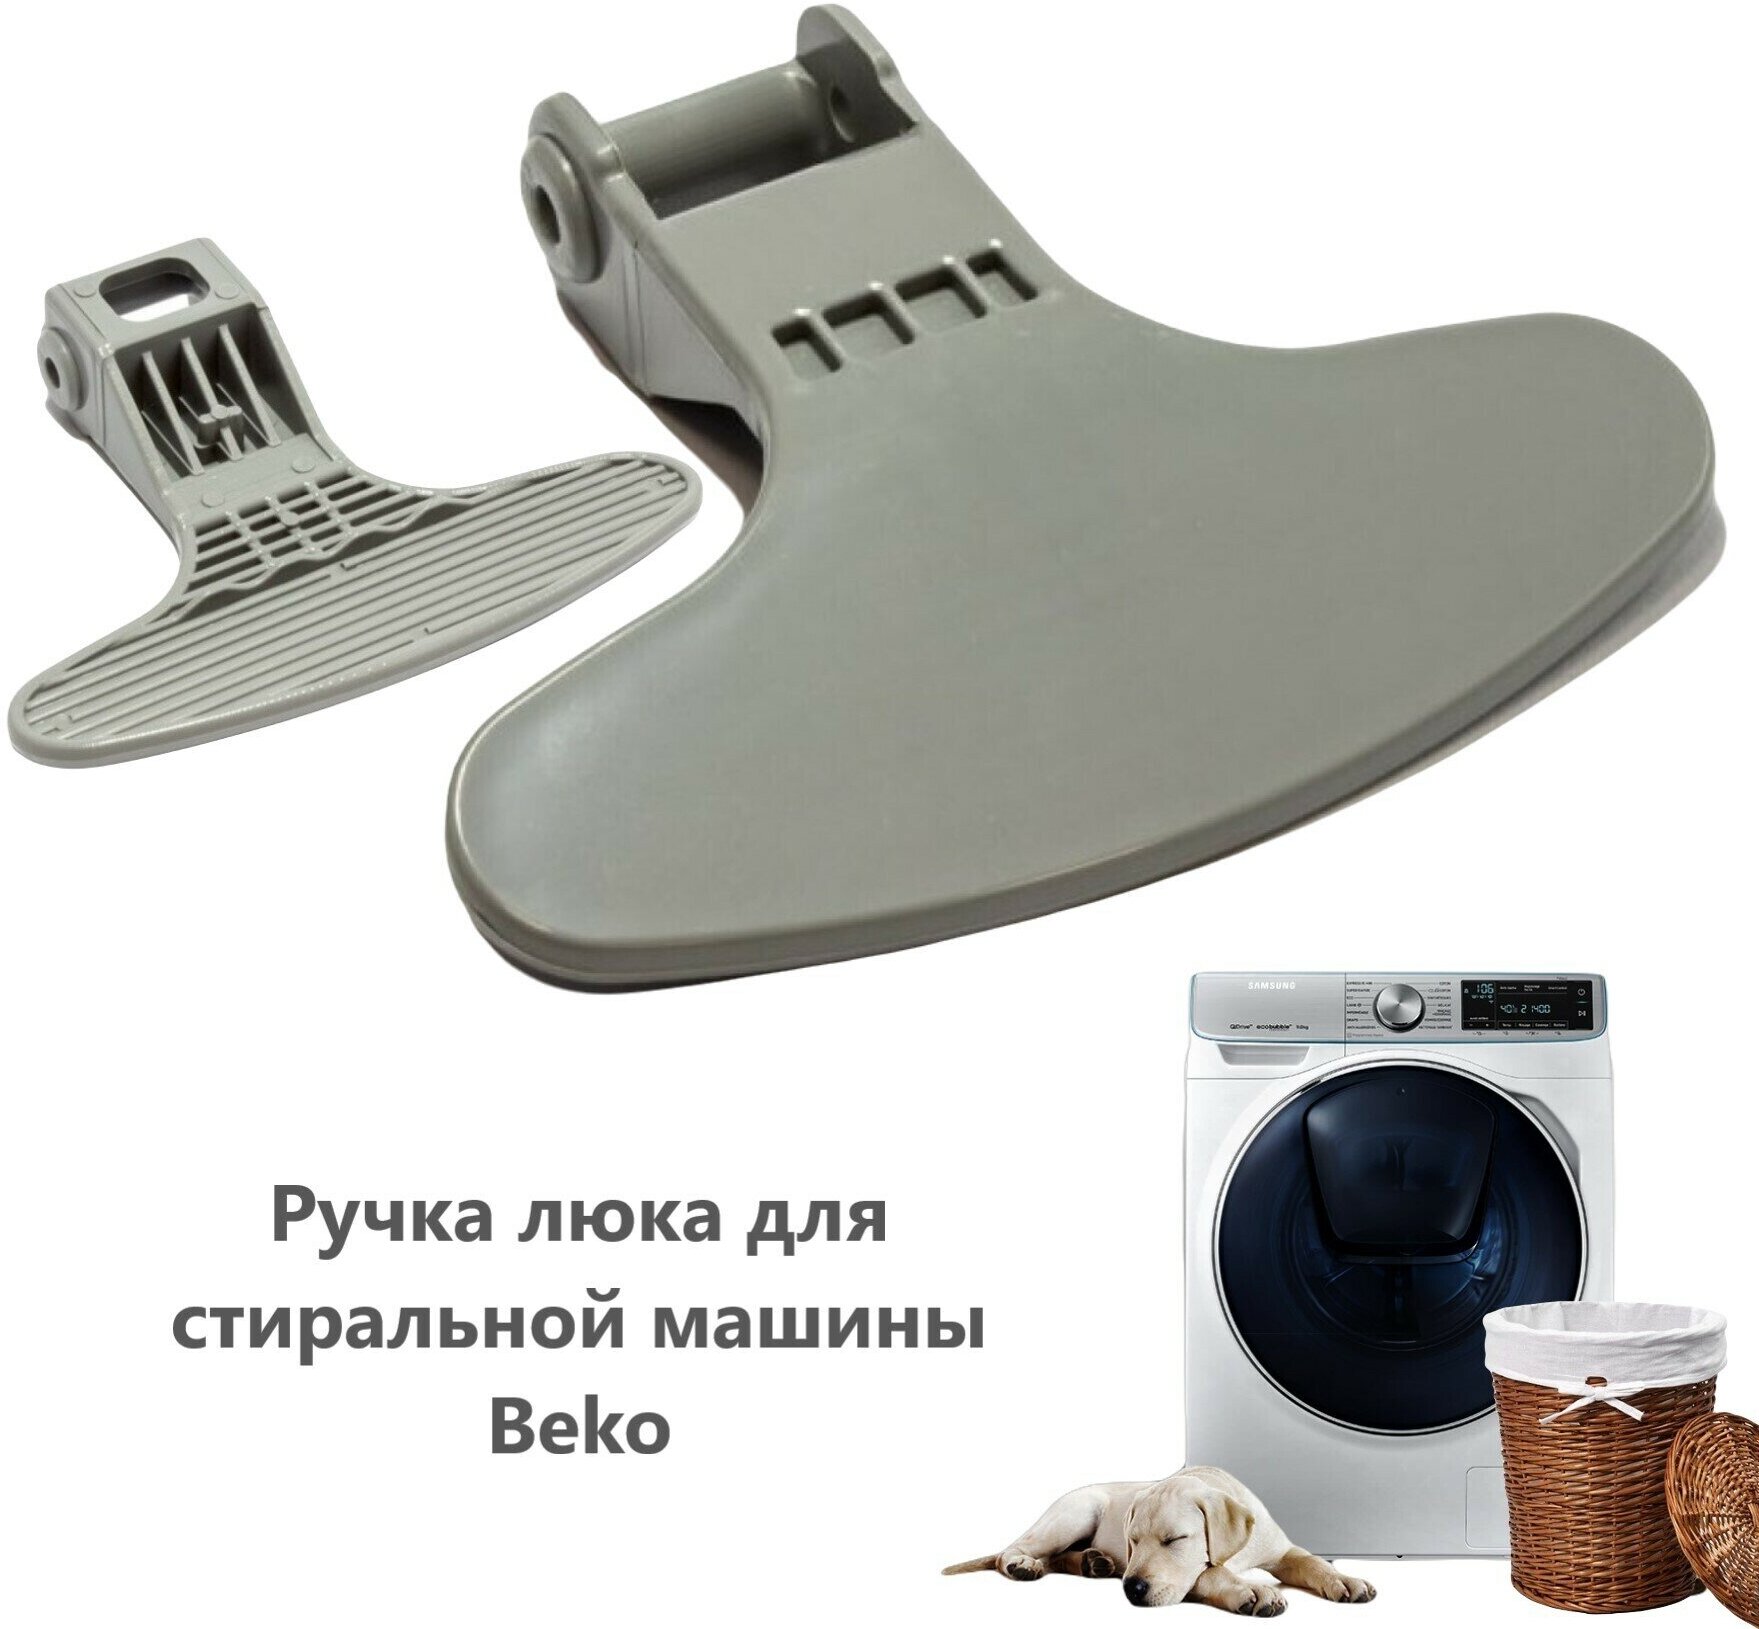 Ручка люка для стиральной машины Beko (Беко) - WL297